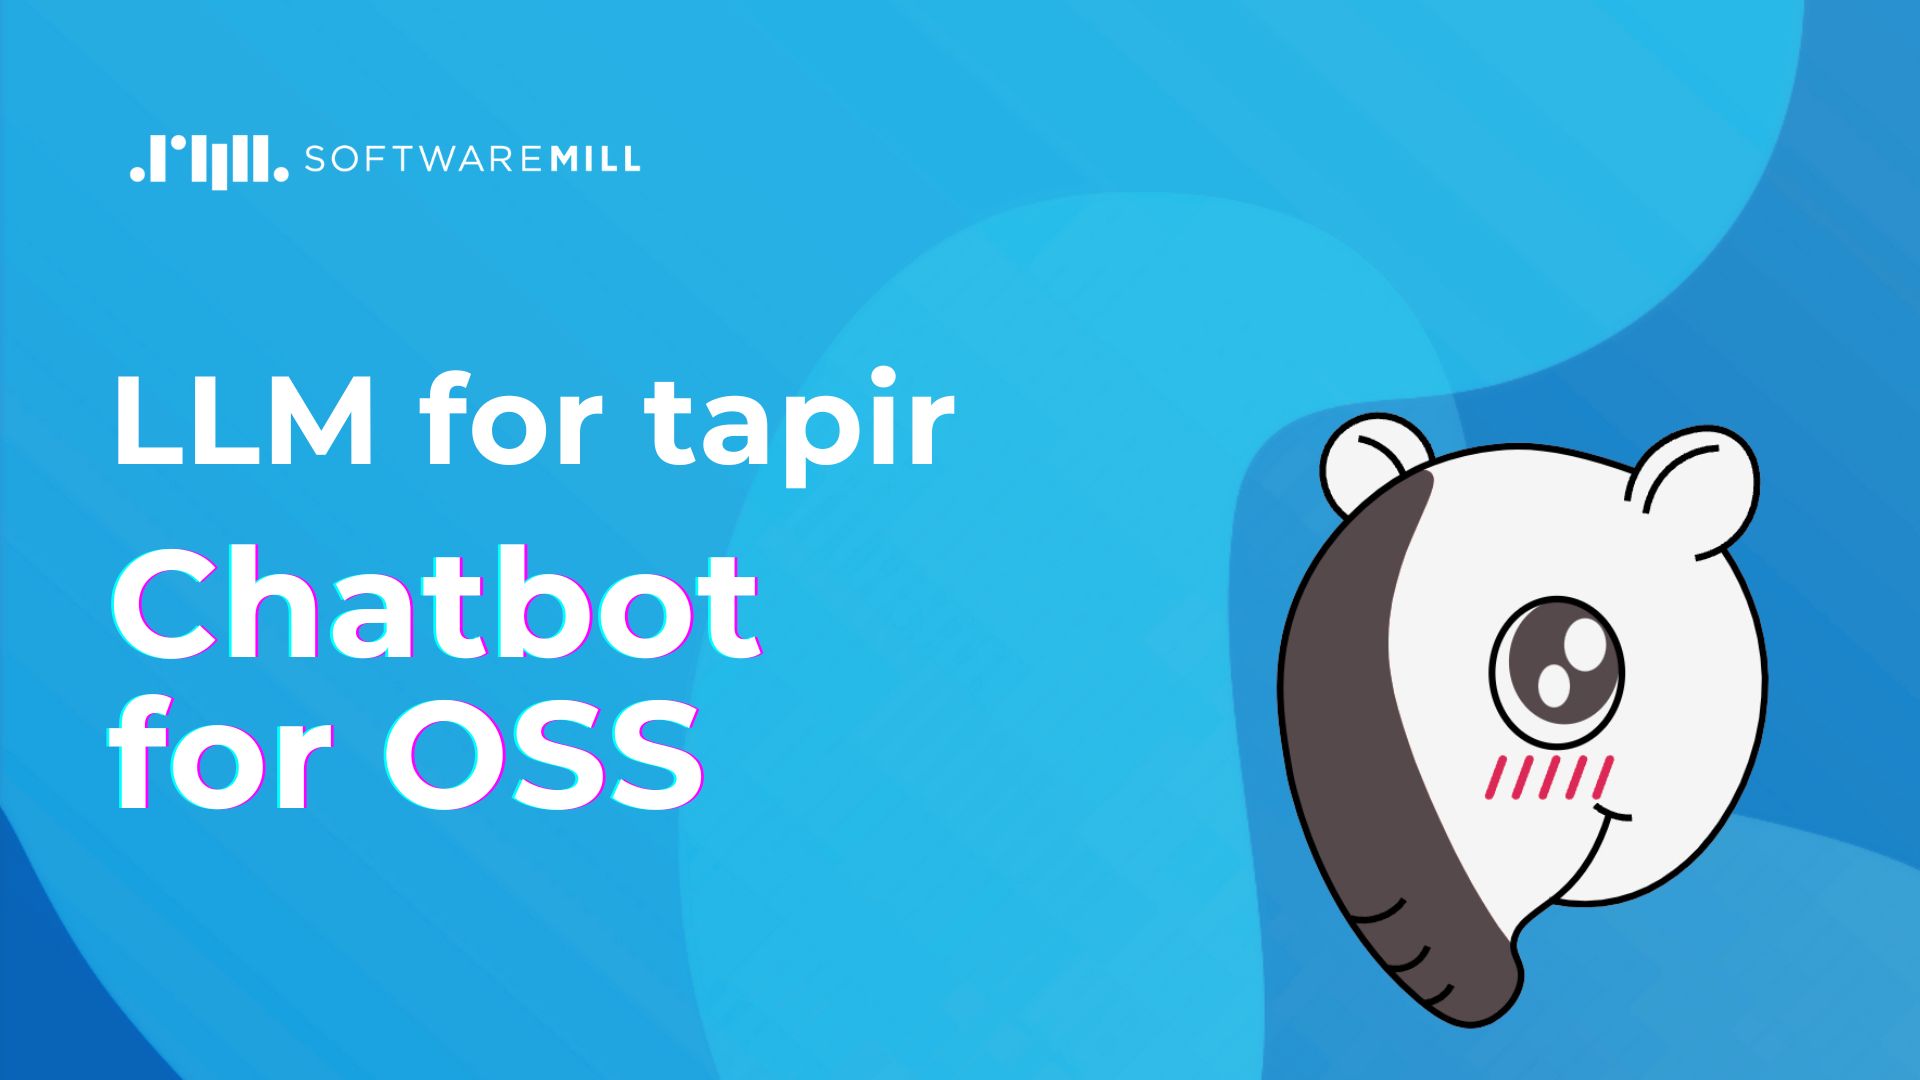 LLM for tapir - Chatbot for OSS webp image